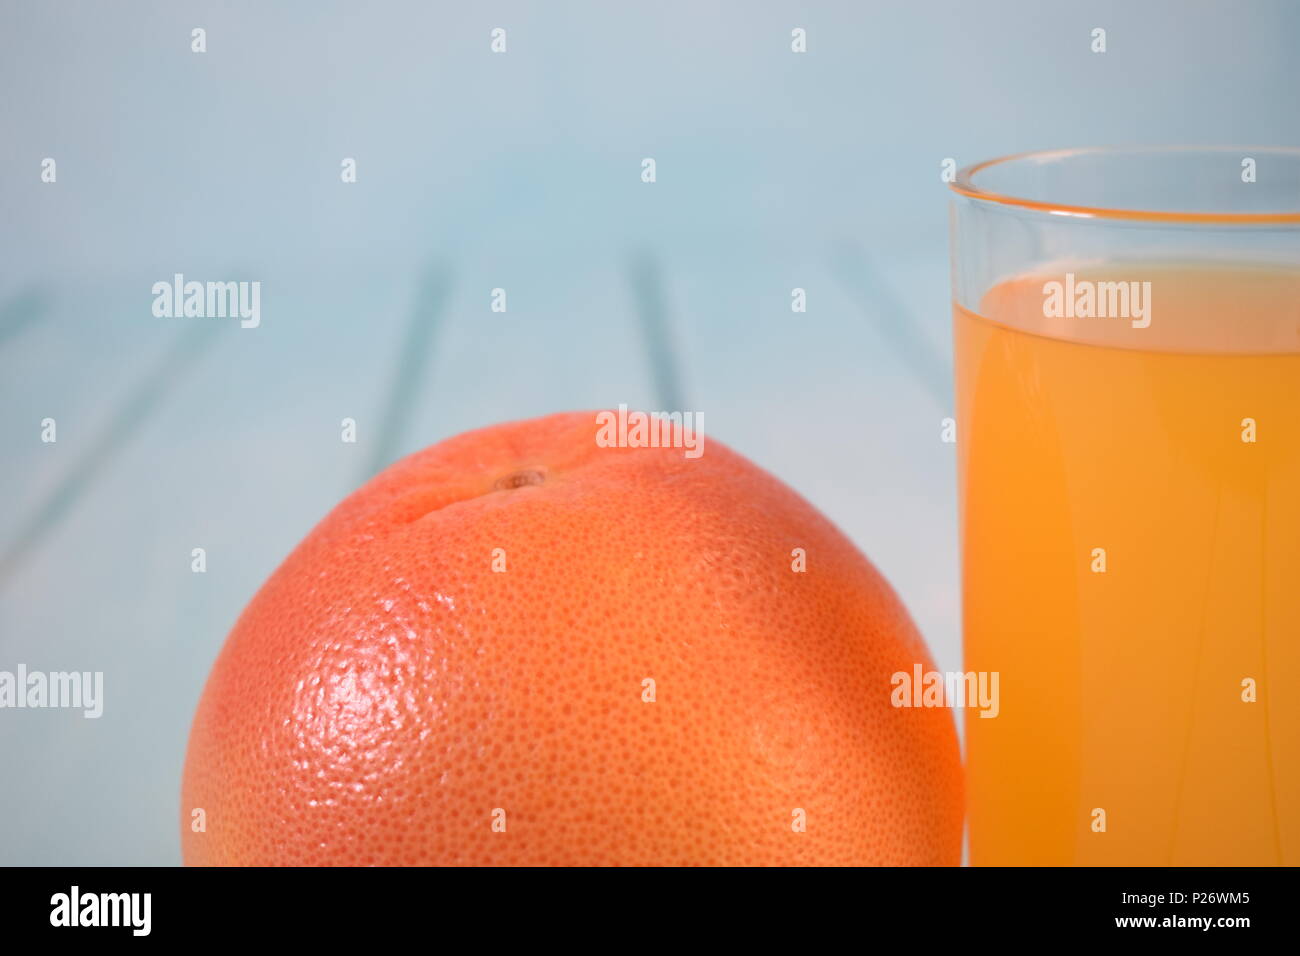 Orange juice and orange fruit Stock Photo